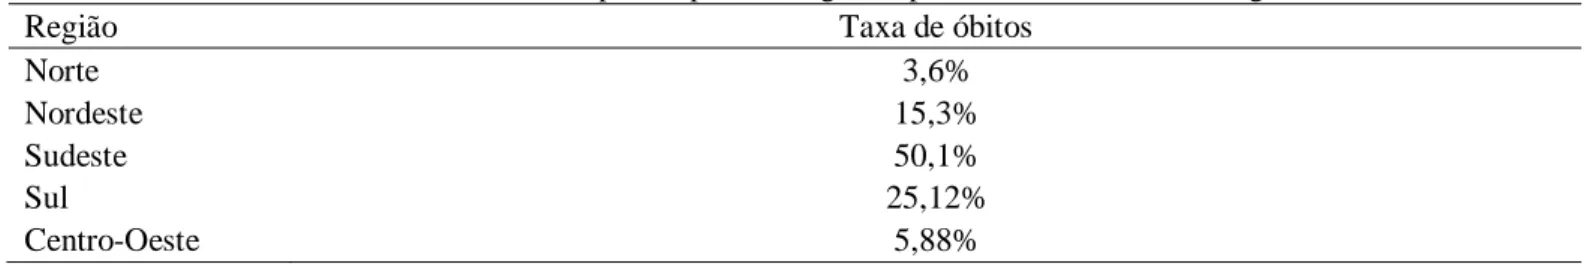 Tabela 10. Taxa de óbitos por neoplasia maligna do pâncreas de acordo com a região. 